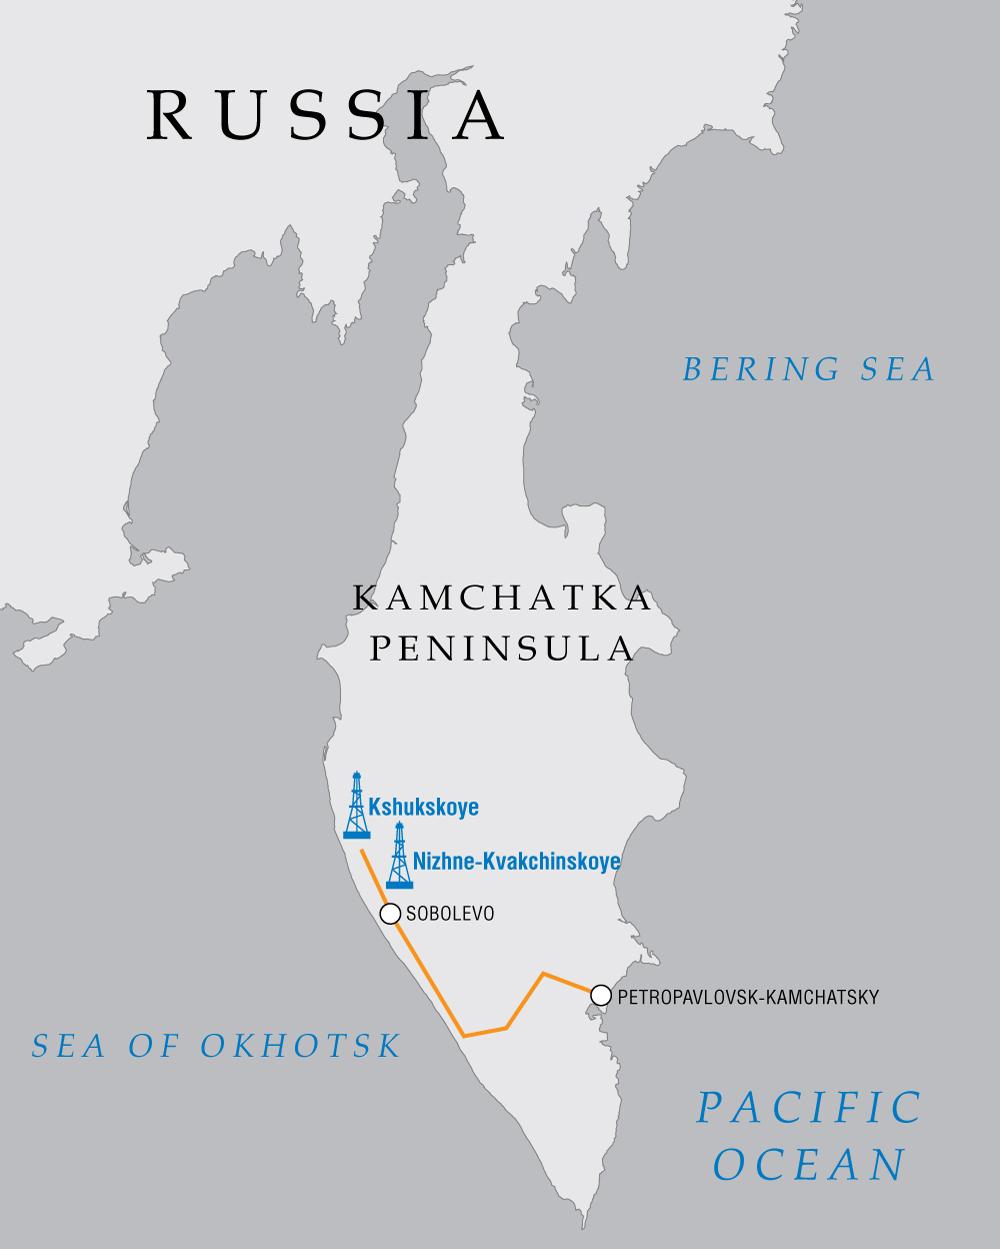 Gas Supply to Kamchatka Gazprom is pre-developing the Kshukskoye and Nizhne-Kvakchikskoye fields on the west coast of the Kamchatka Peninsula.